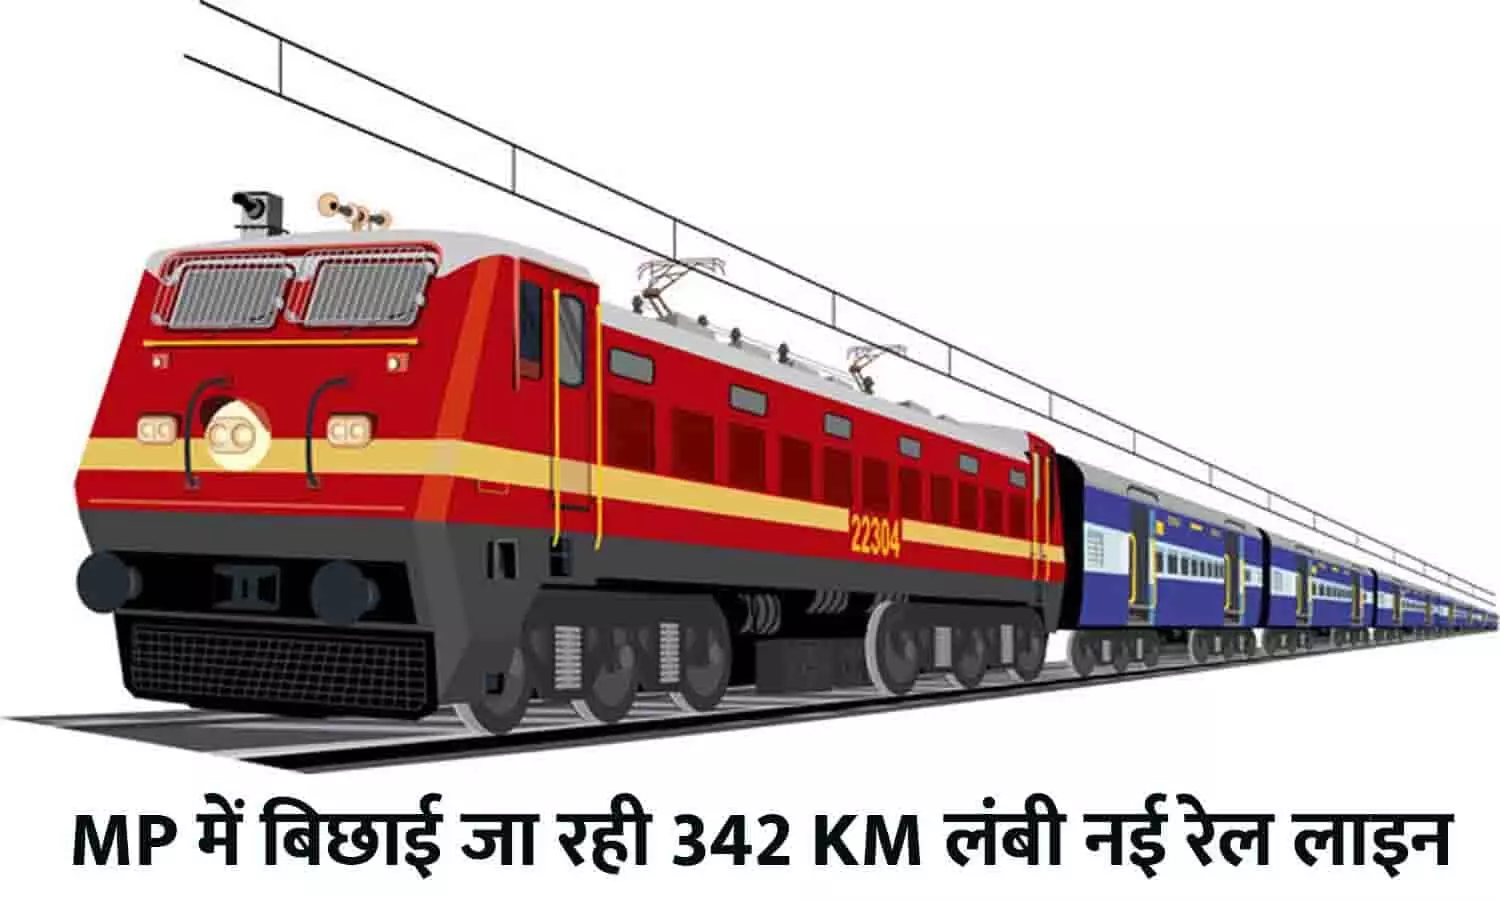 MP में बिछाई जा रही 342 KM लंबी नई रेल लाइन, हेलीकॉप्टर से सर्वे शुरू, ₹514.40 करोड़ बजट पास, जाने Full Info